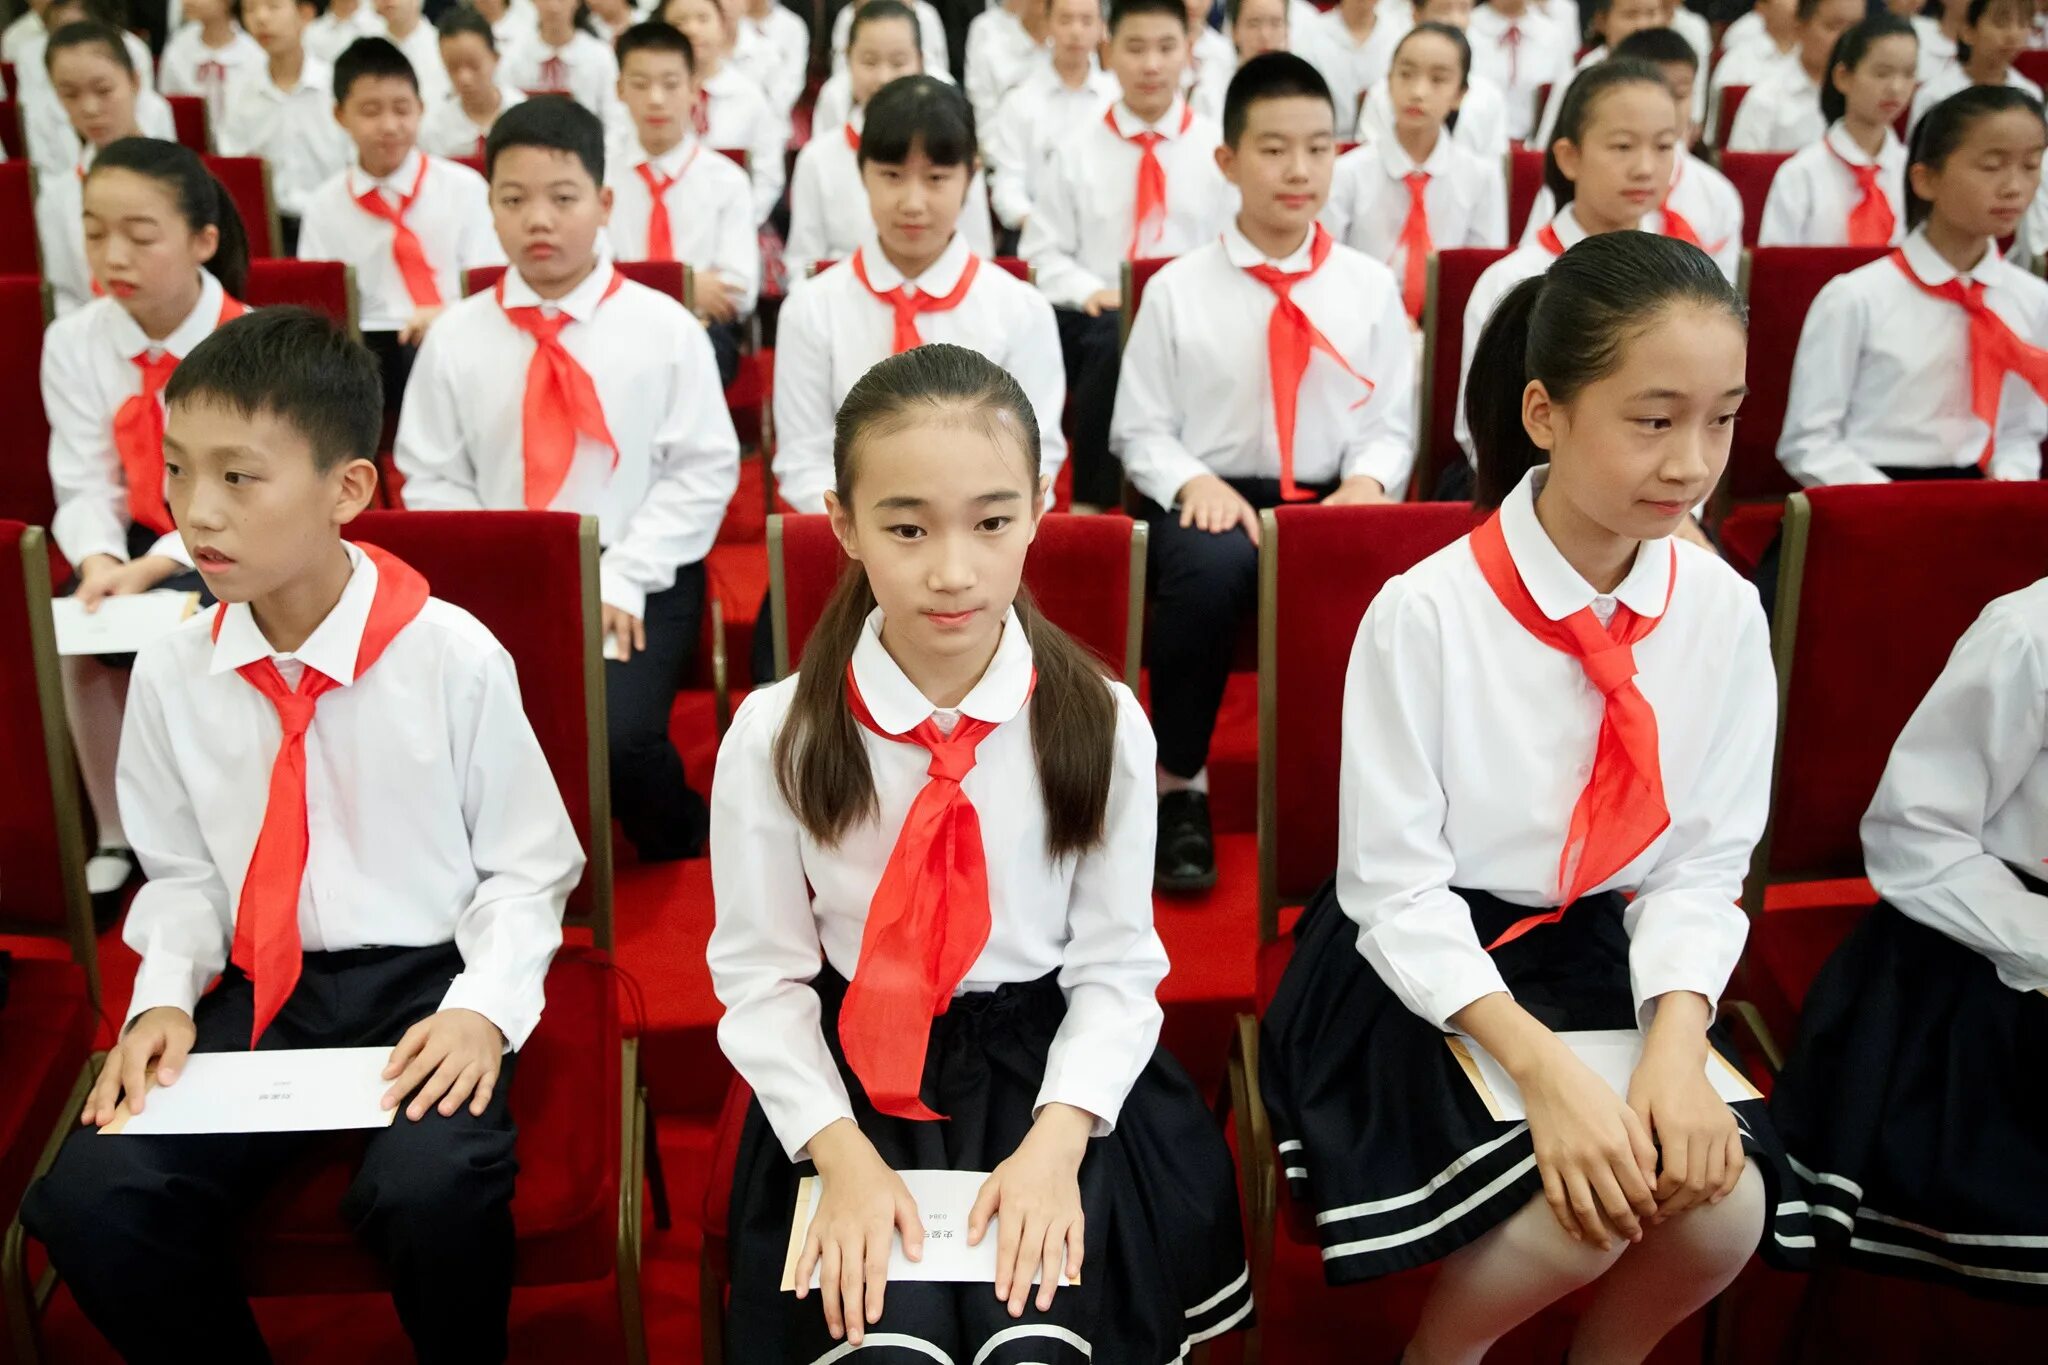 В школе китайский изучает 60 учащихся. Китайская школа. Китайские школьники. Ученики в Китае. Пионеры Китая.